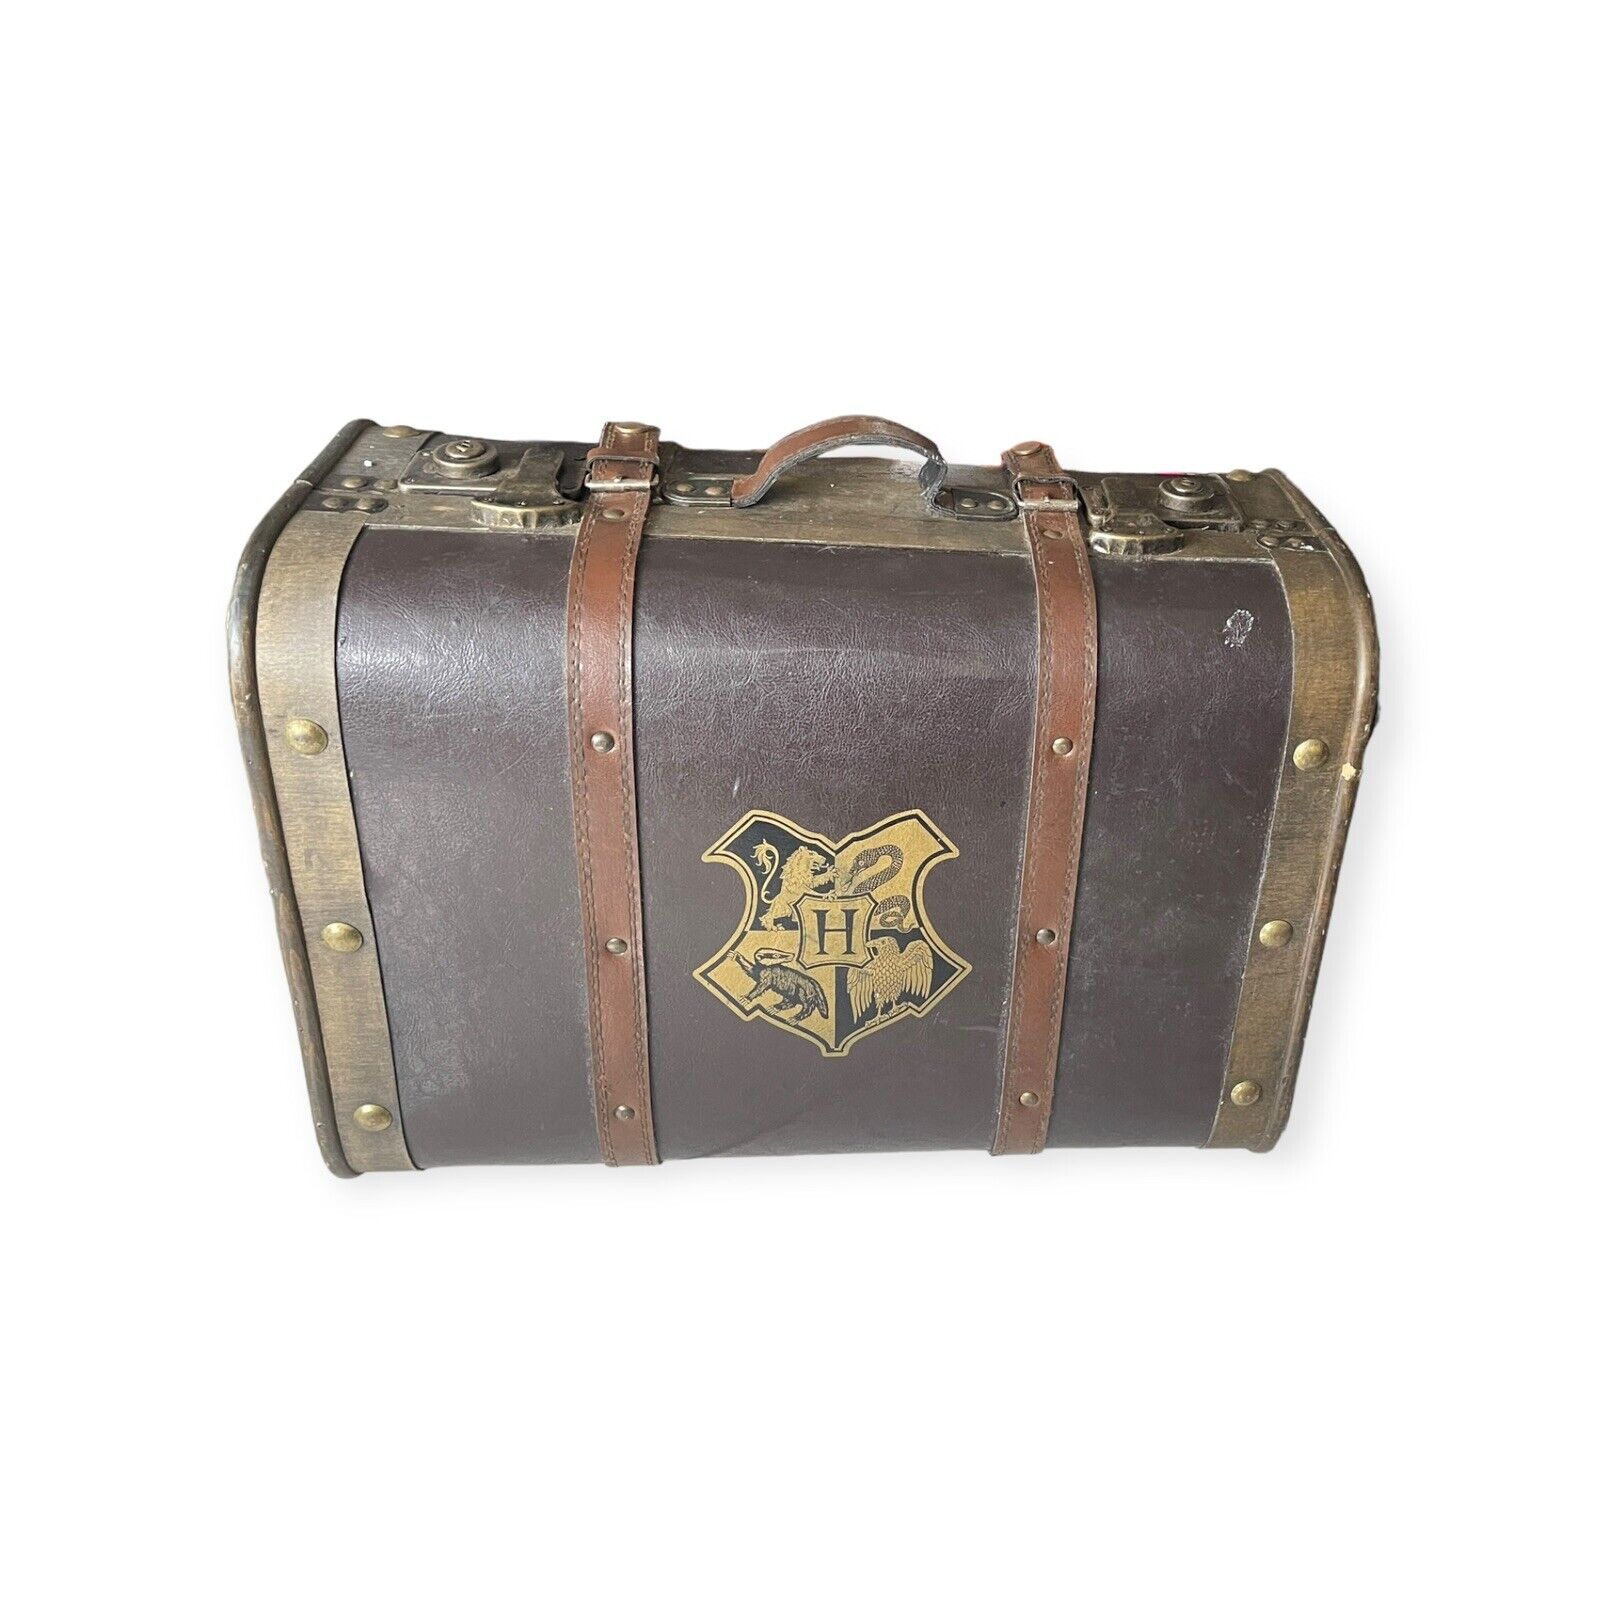 Harry Potter Hogwarts Stationary Leather Wood Luggage Suitcase LARGE Trunk 